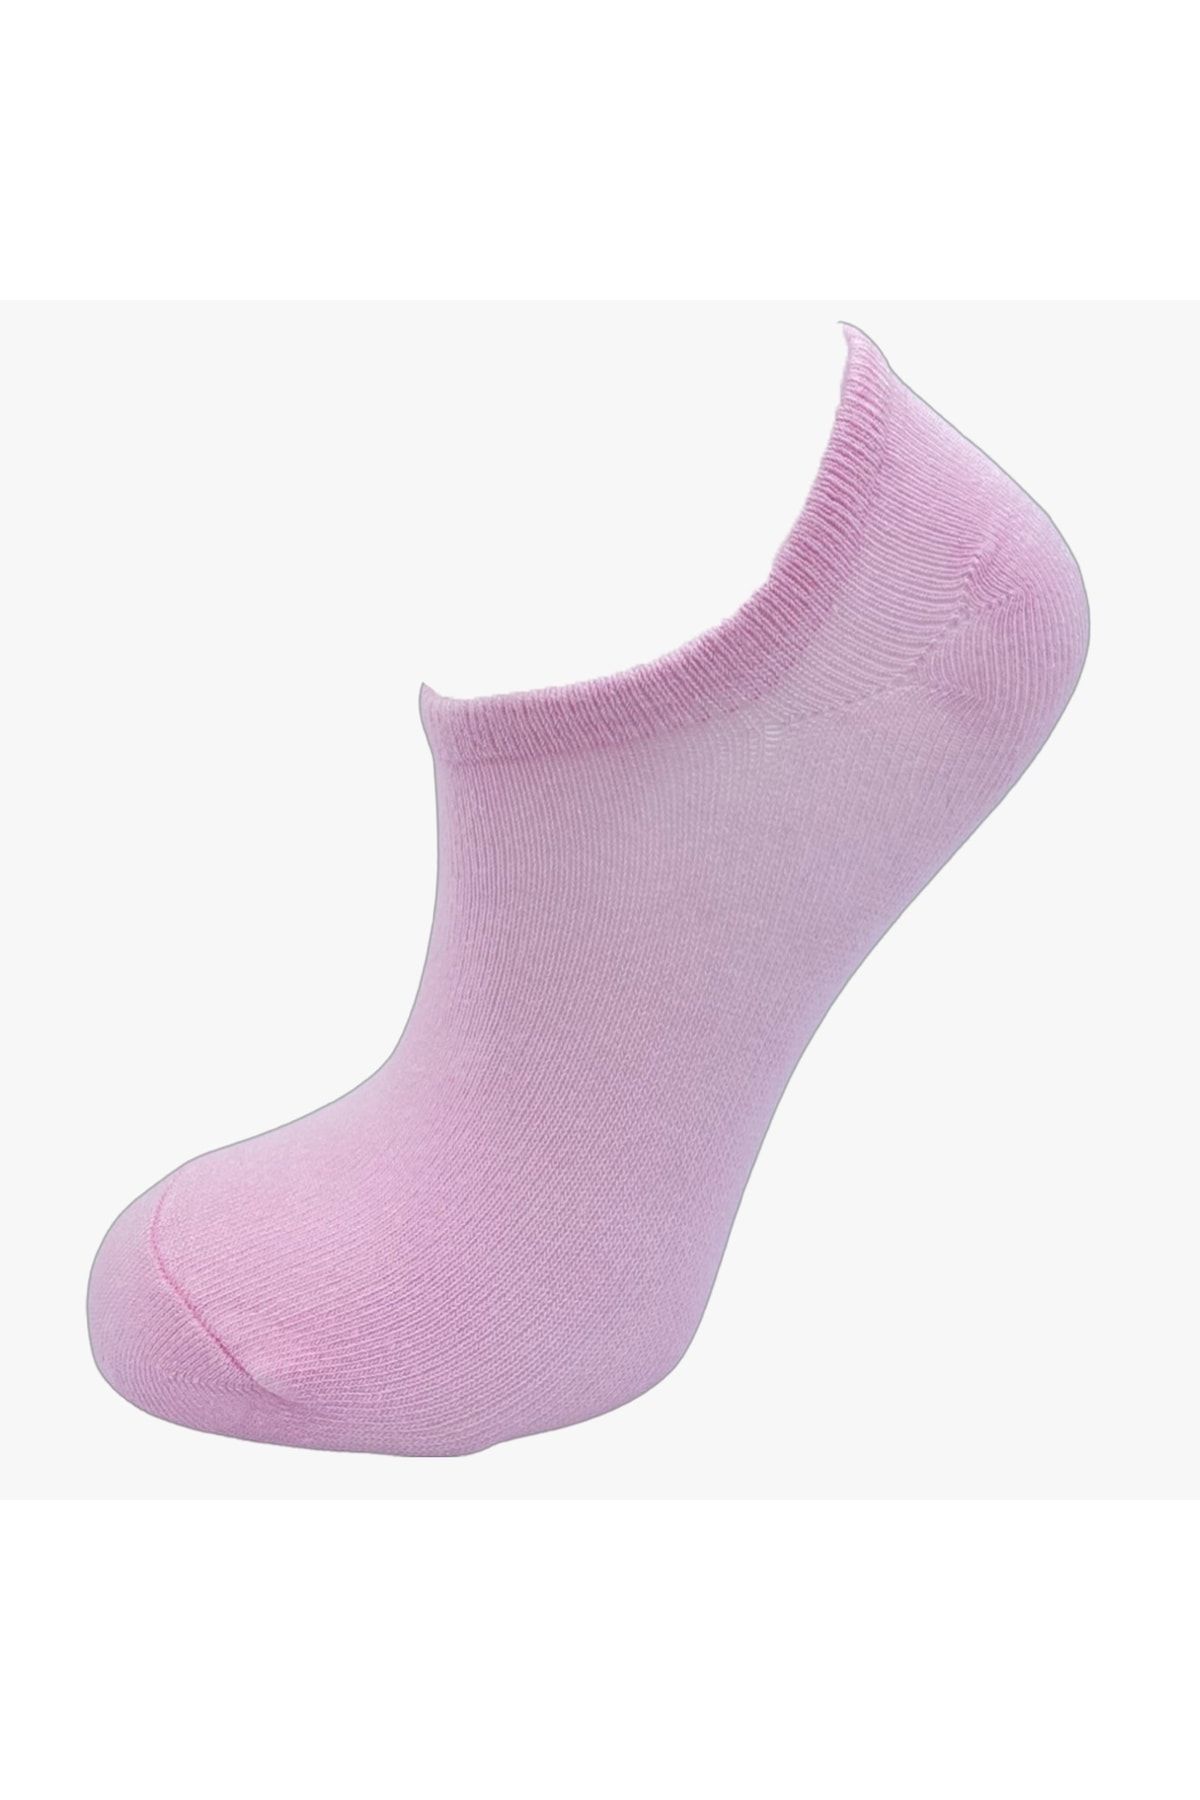 pazariz Kadın Patik Çorap 6 Adet